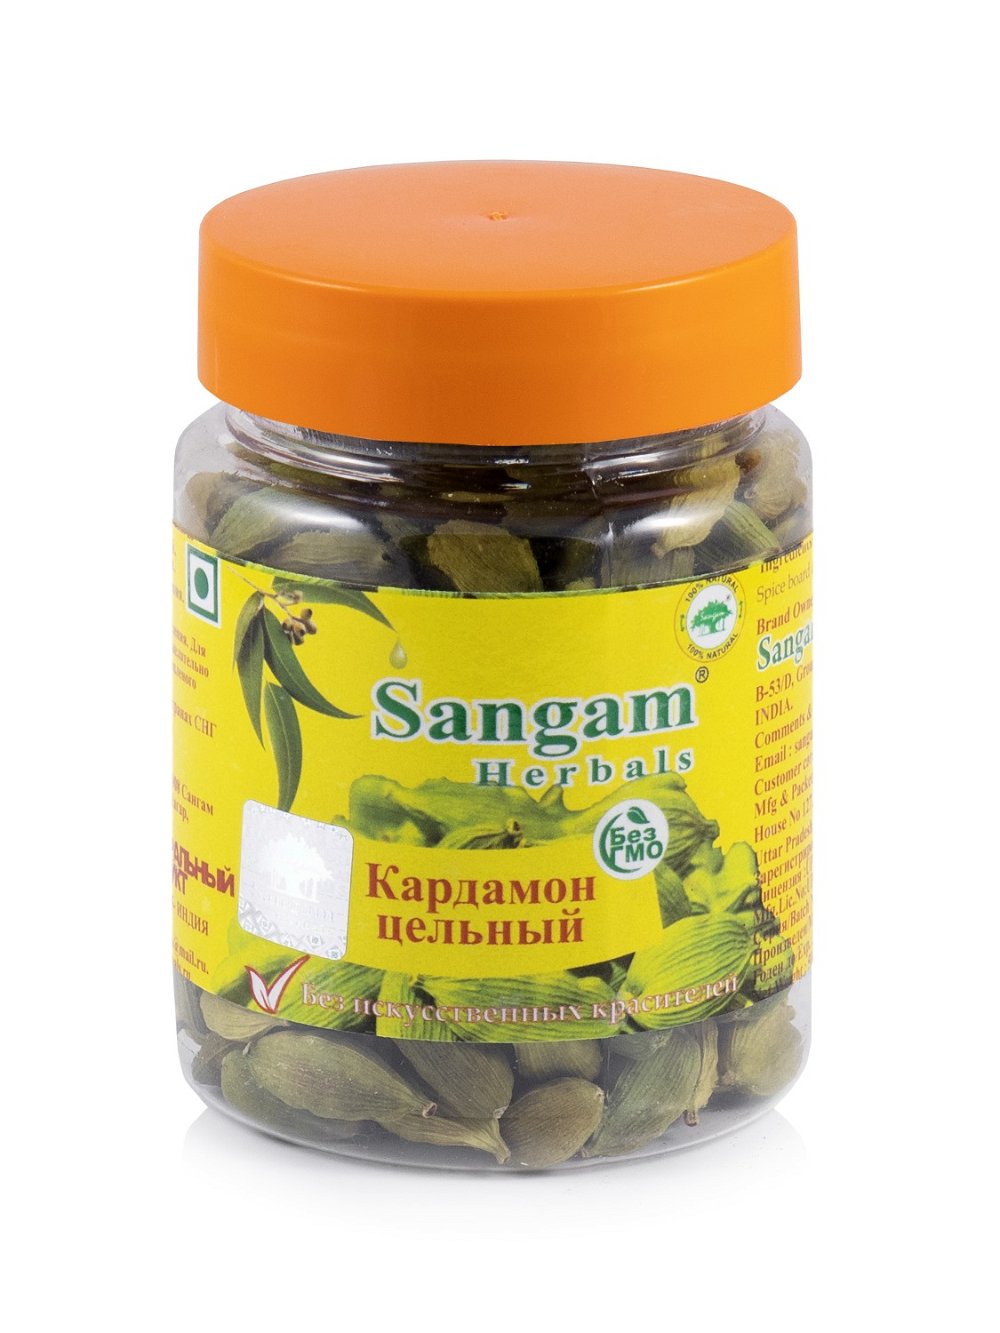 Кардамон зеленый цельный Sangam Herbals (50 г), Кардамон зеленый